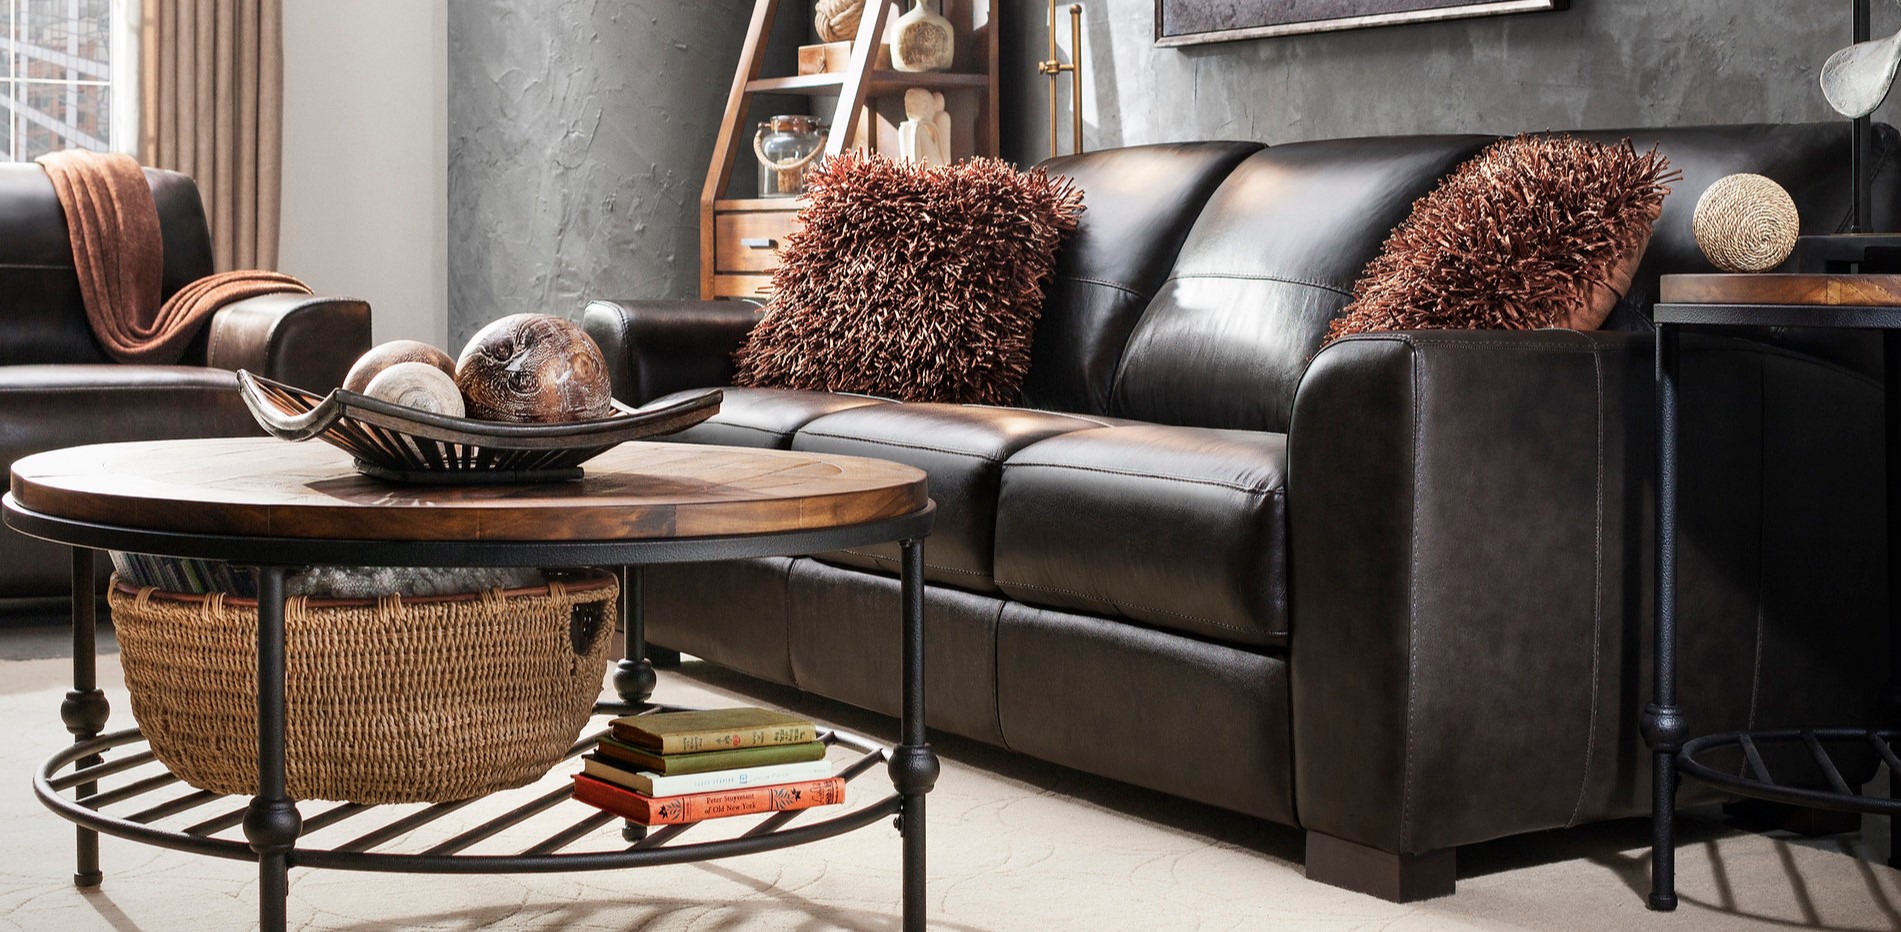 Кожаный диван в интерьере: преимущества мебели, правила ухода за обивкой